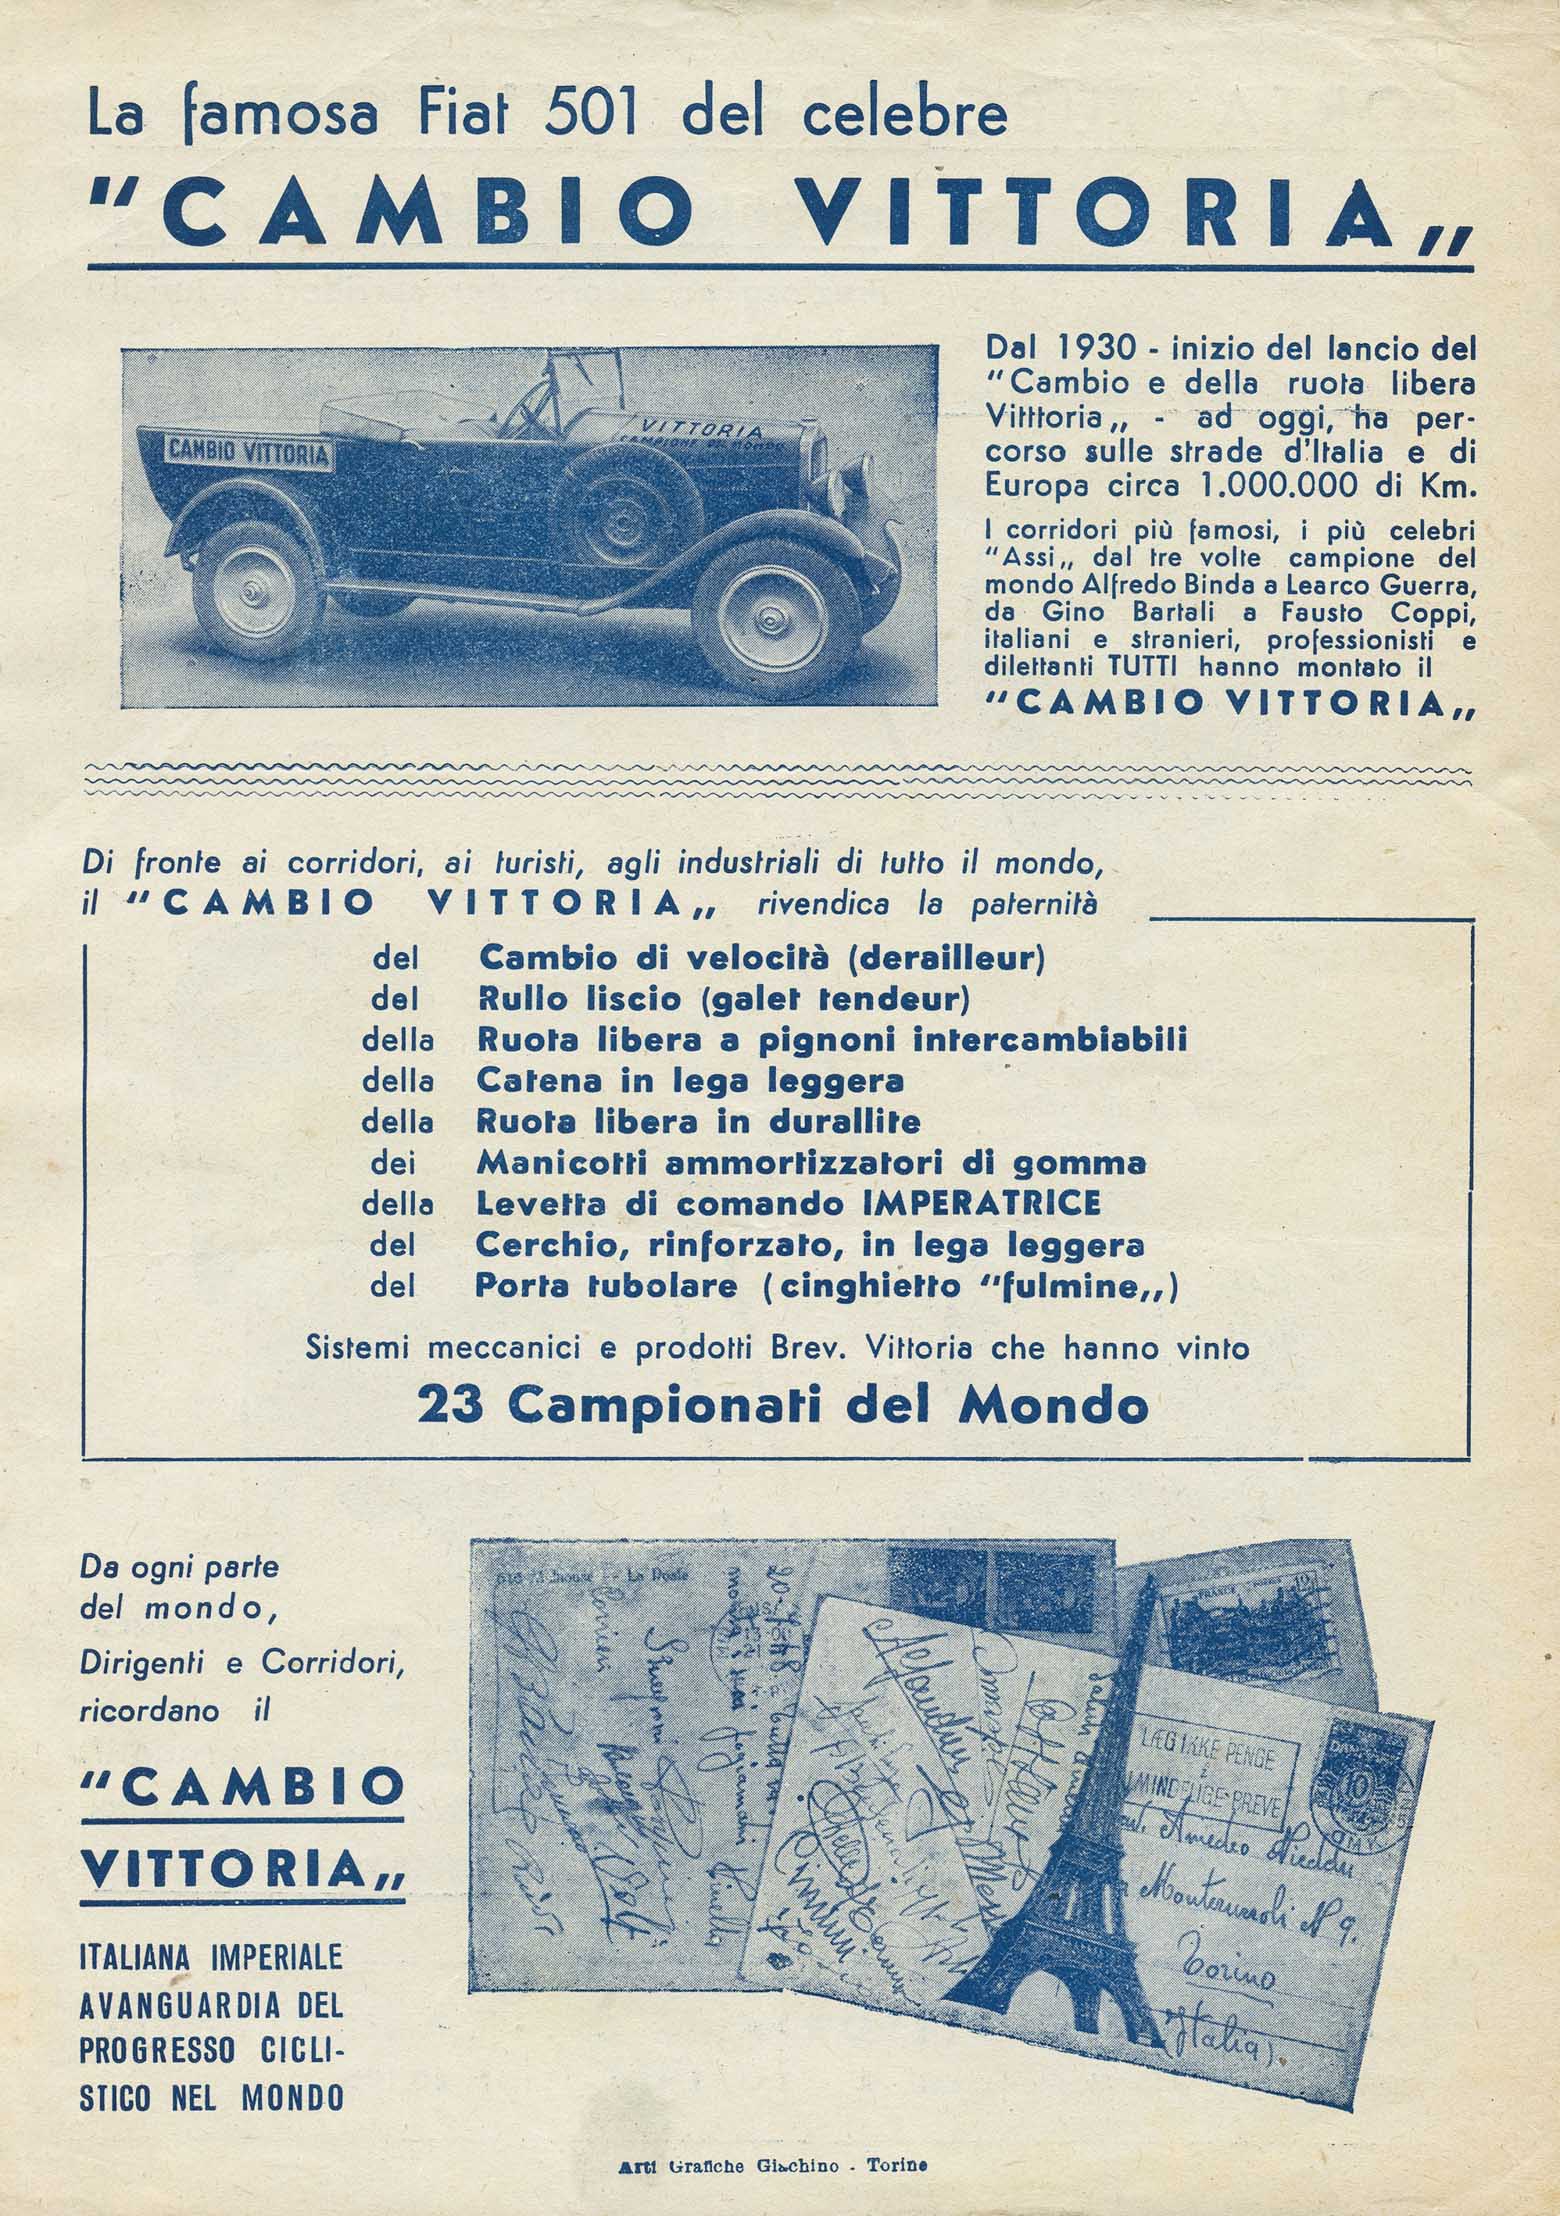 La famosa Fiat 501 del celebre 'Cambio Vittoria' scan 01 main image